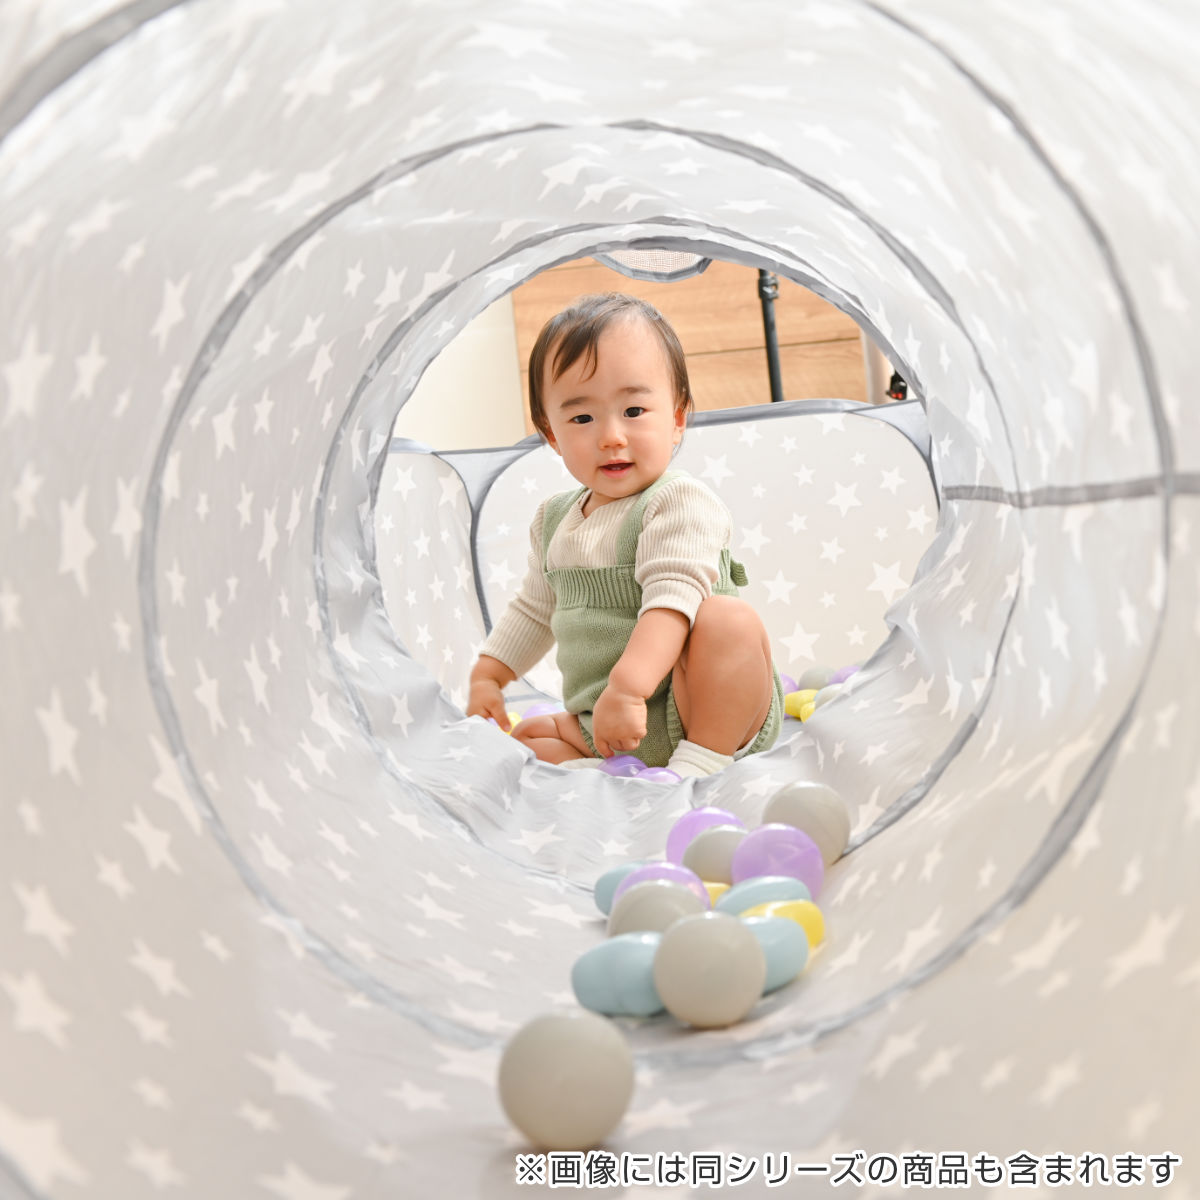 市場 キッズテント ボール遊び 女の子 キッズ 室内遊び 3歳 おもちゃ トンネル 子ども ポップアップ式トンネル 幼児 ポップアップ式 プレイトンネル